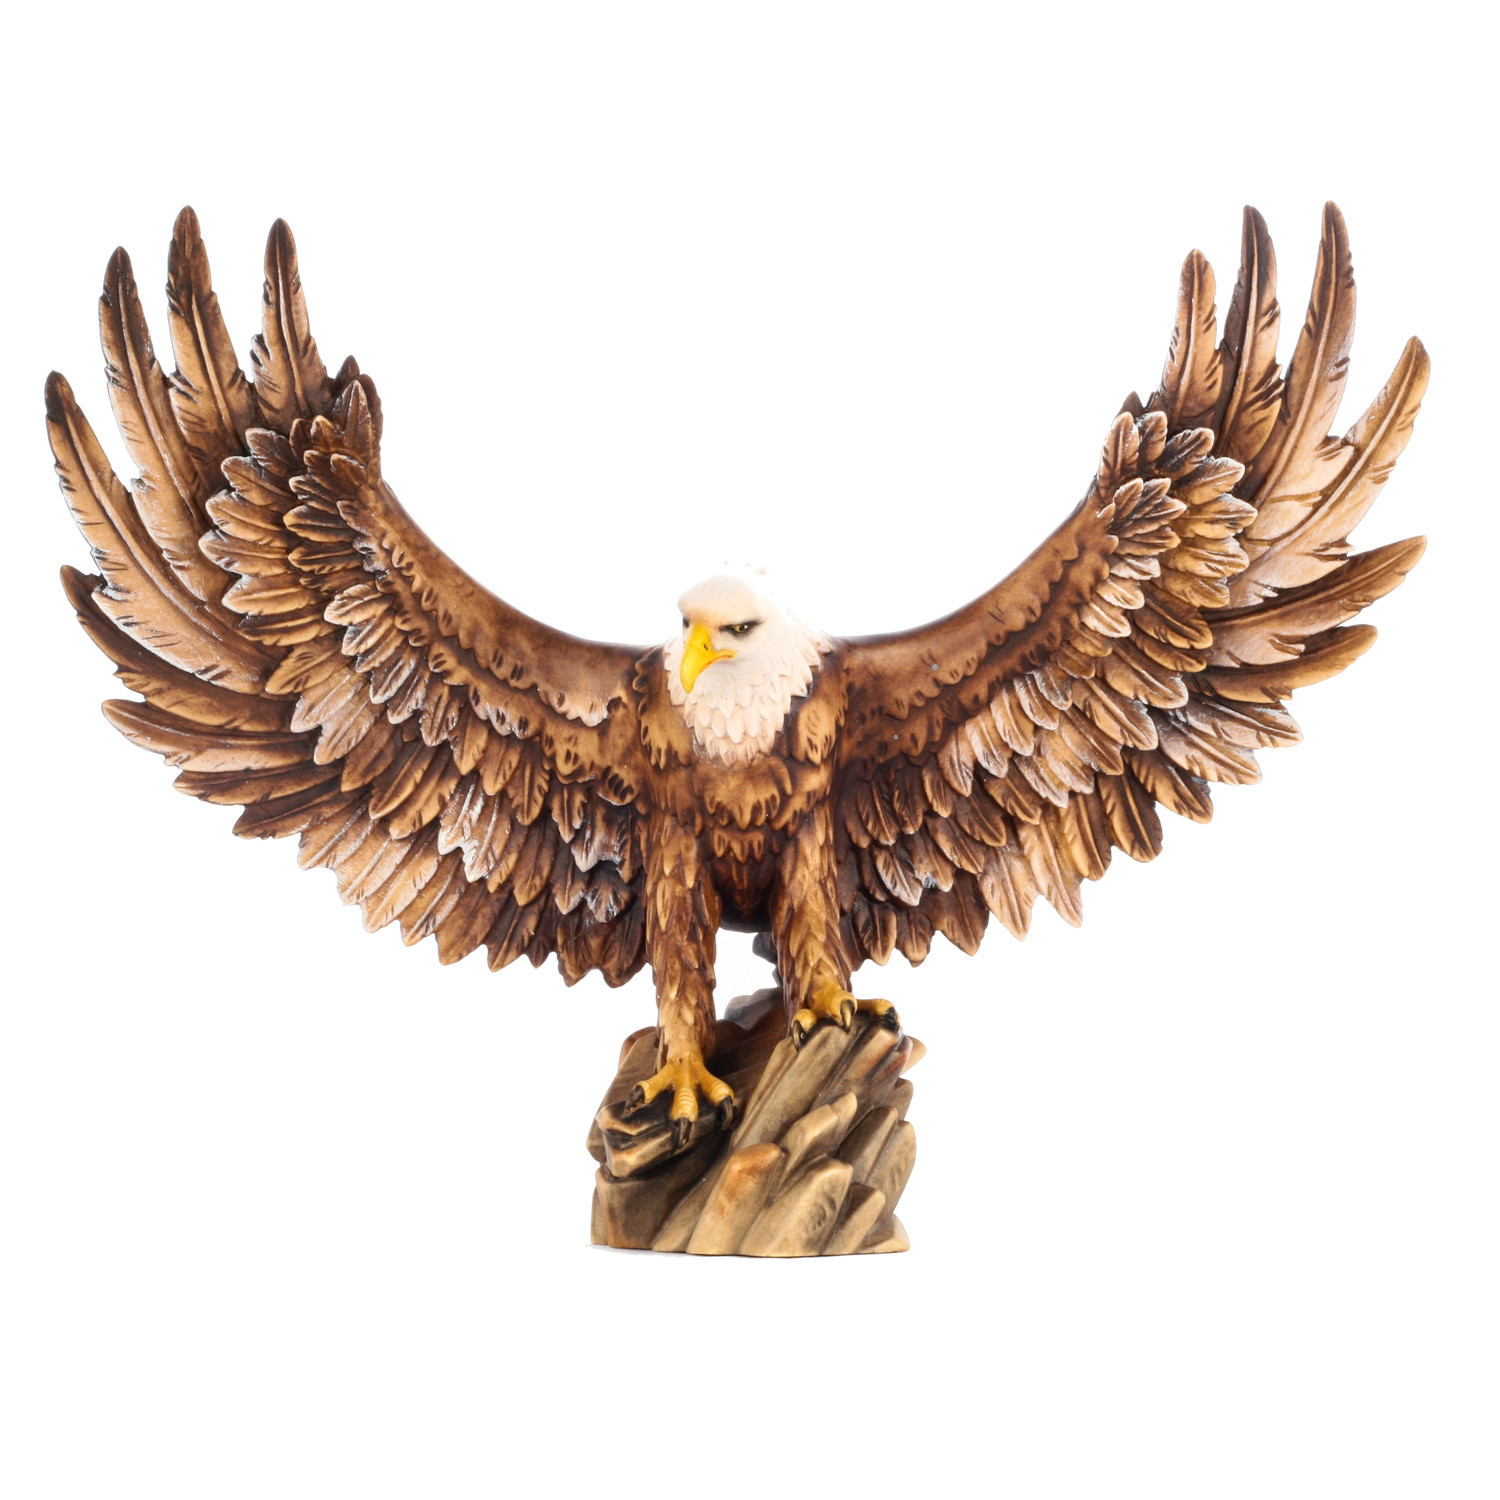 Купить орла спб. Орел с расправленными крыльями. Фигурка орла из дерева. Статуэтка Орел с расправленными крыльями. Орел из дерева.